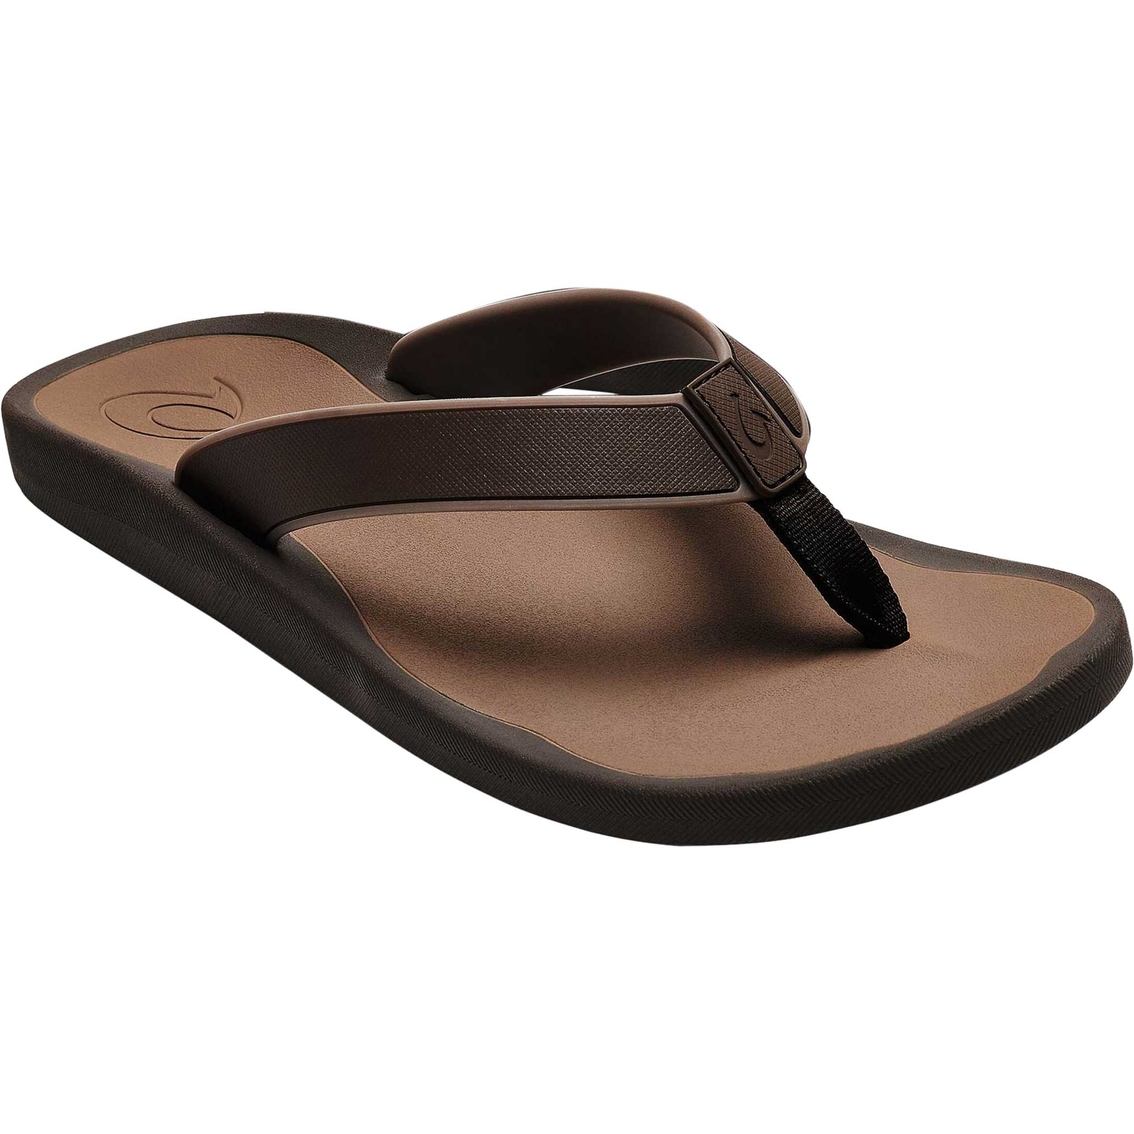 Olukai koko sandals Men's Koko'o Sandals | Sandals & Flip Flops | Shoes | Shop